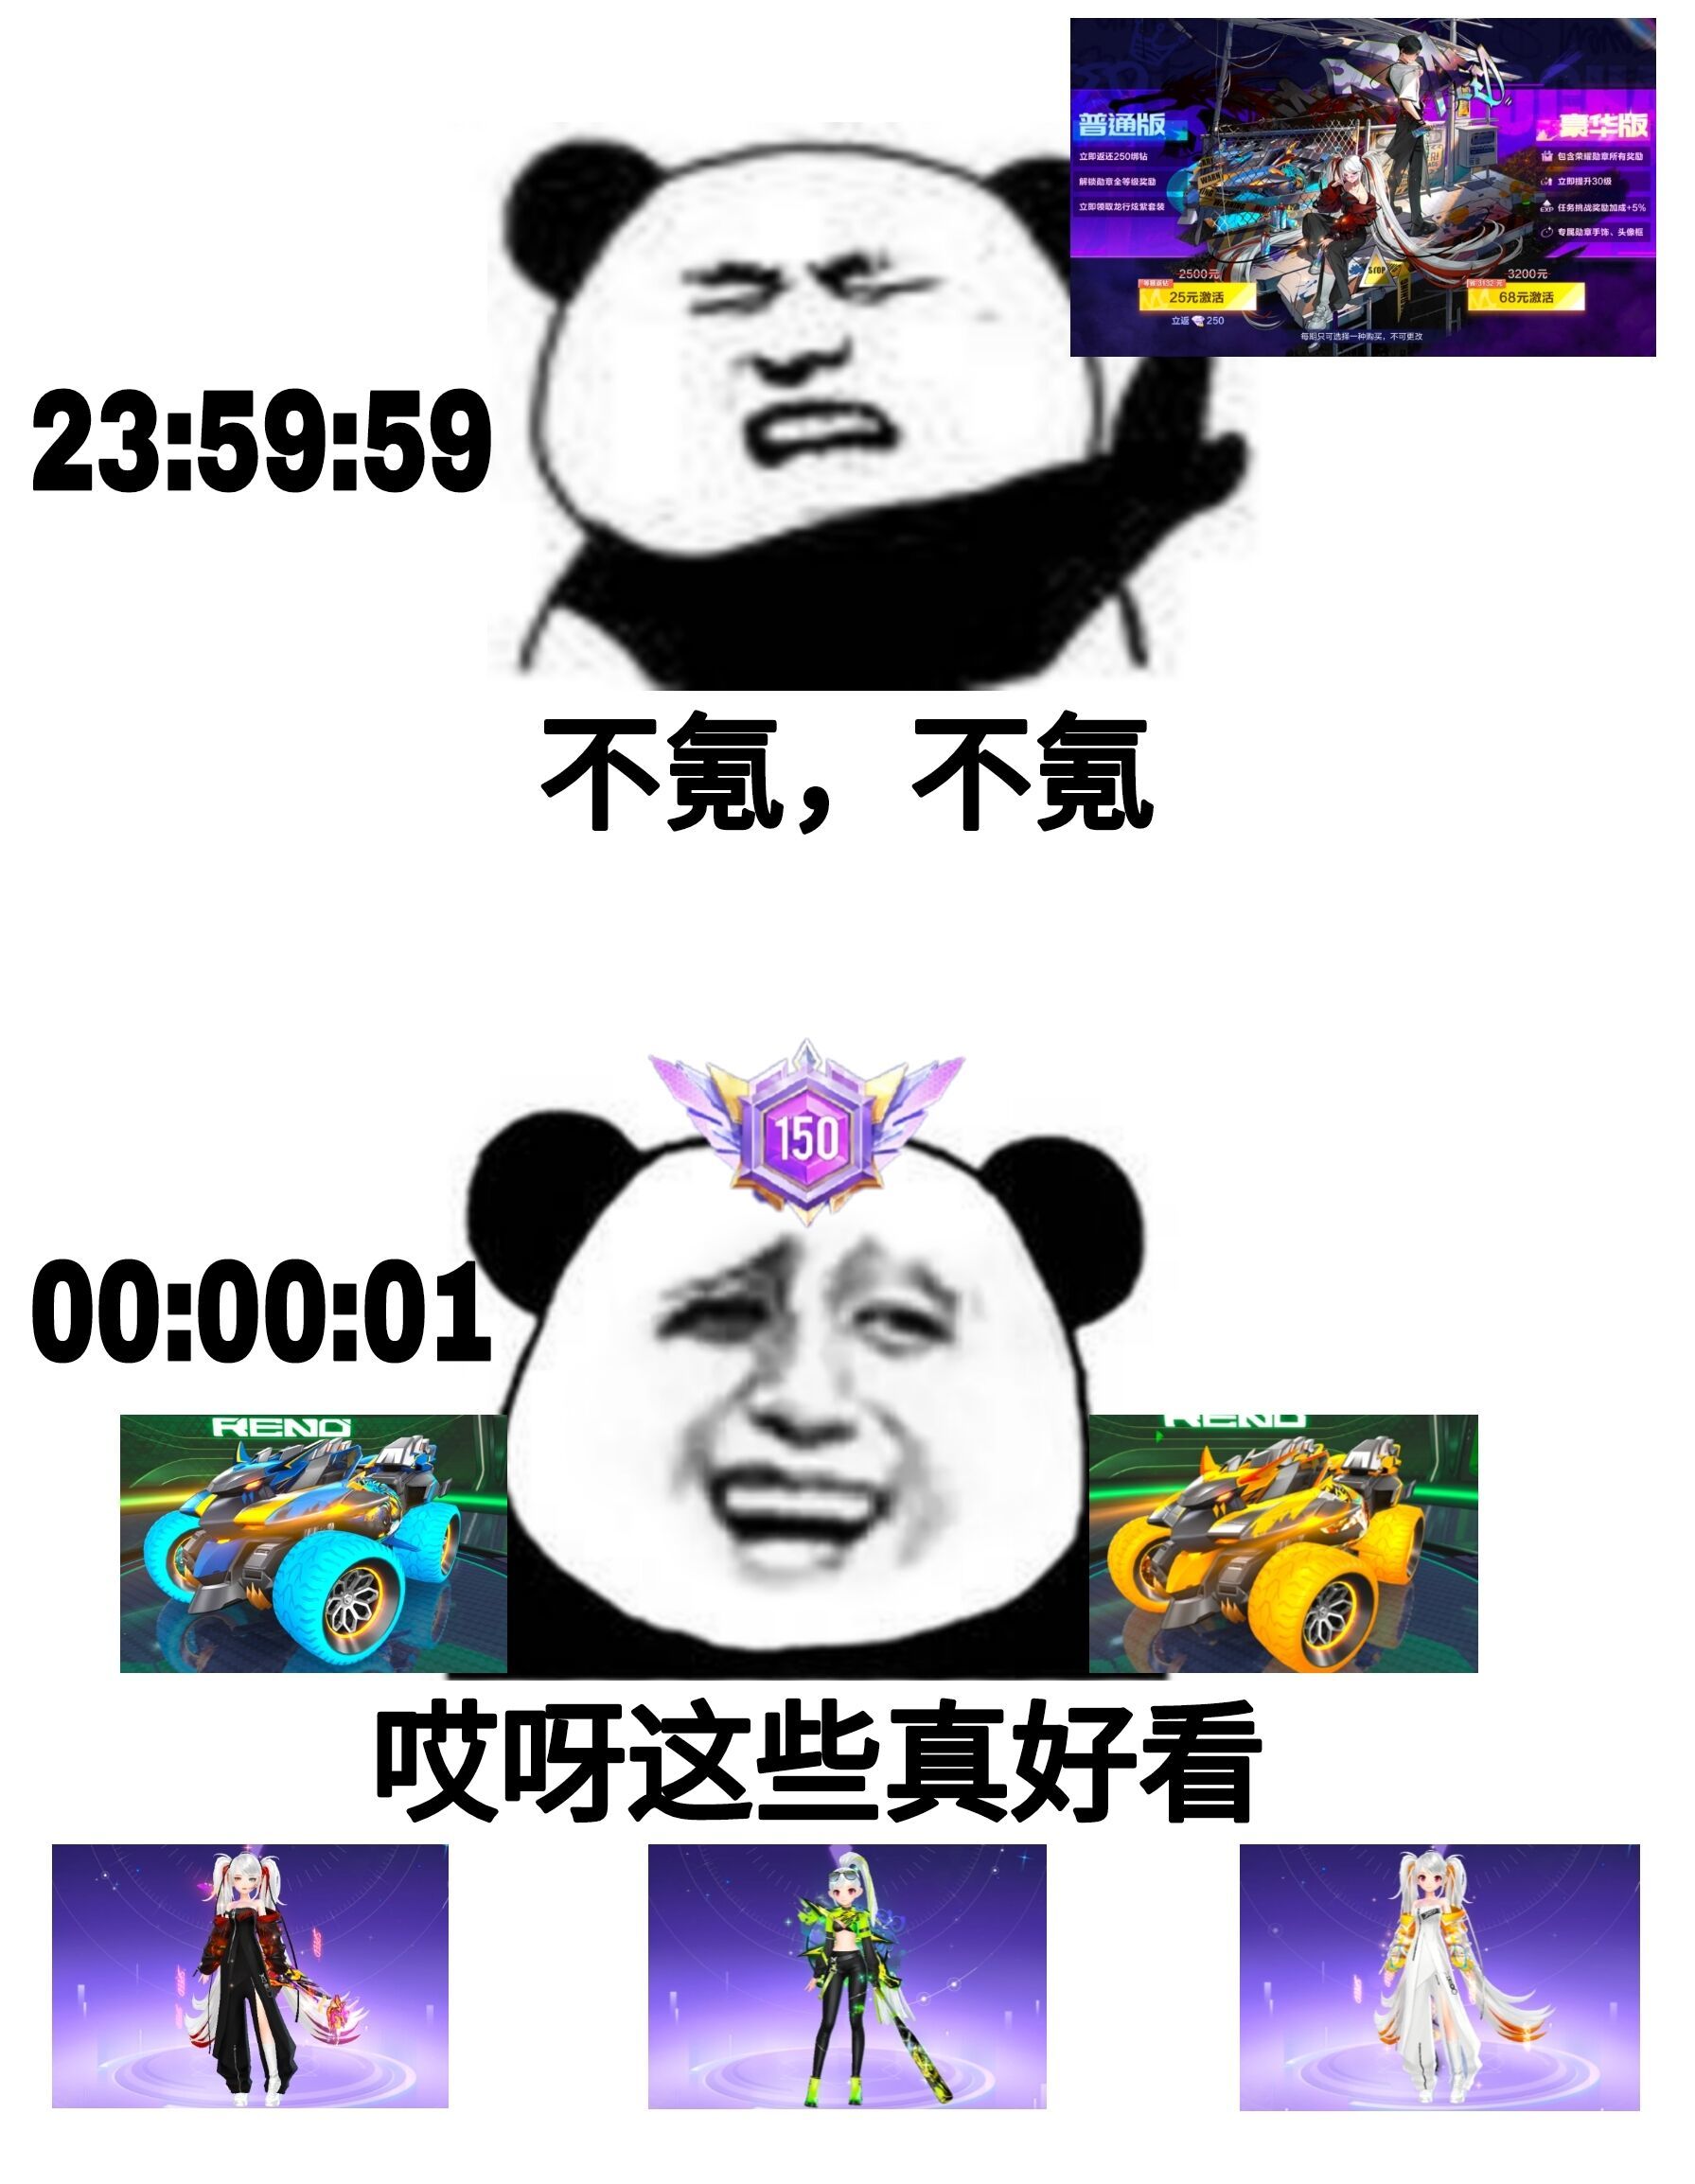 QQ飞车手游官网-官方网站-腾讯游戏